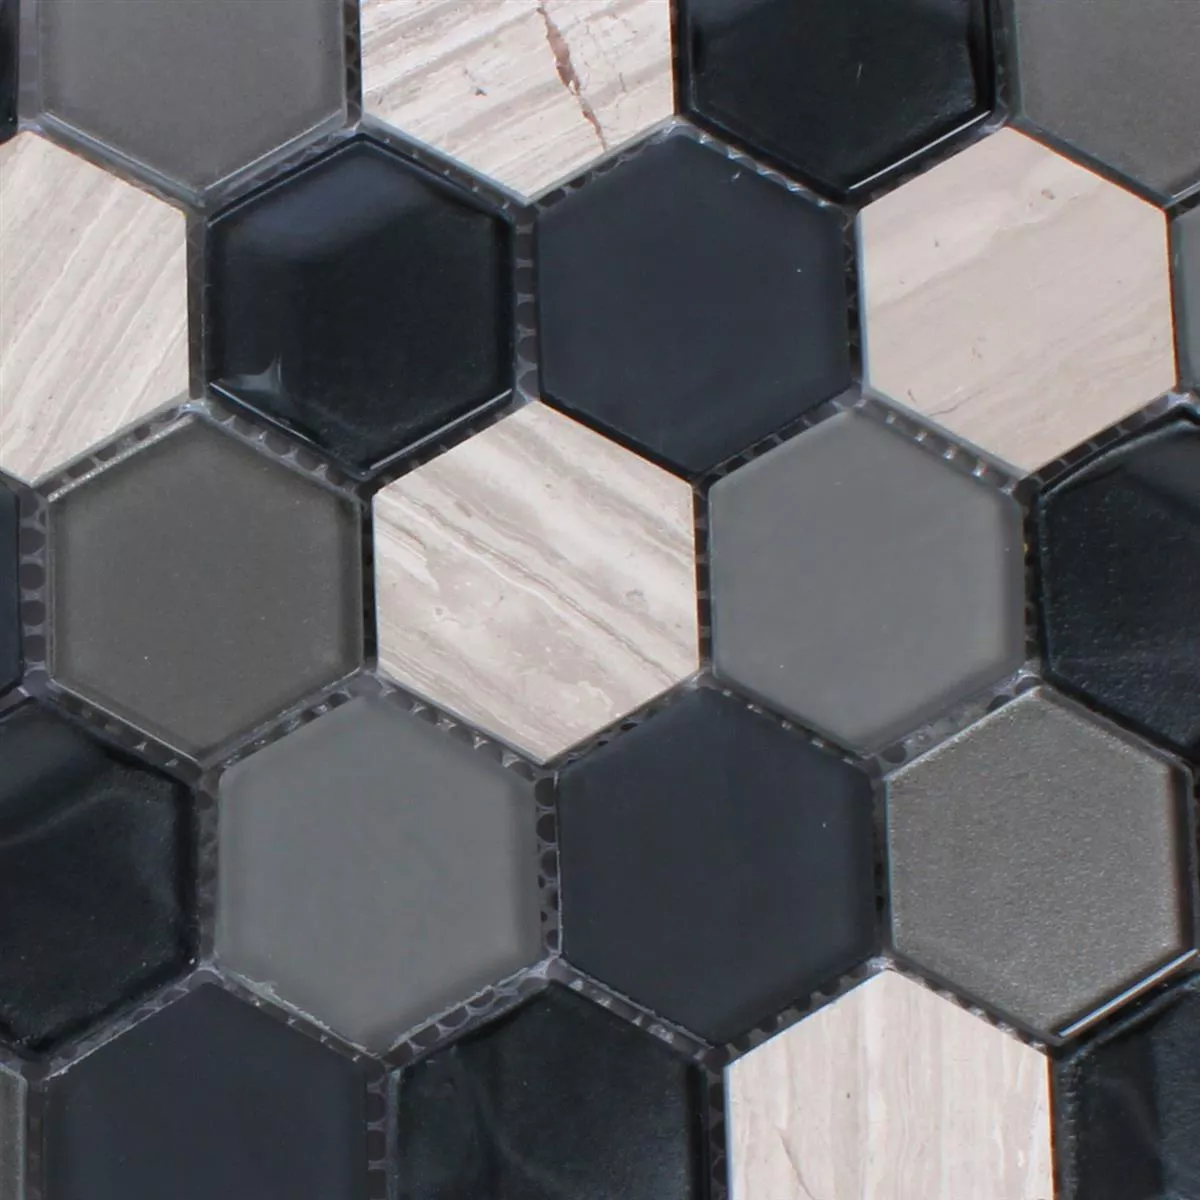 Mosaik Hexagon Glas Natursten Svart Grå 3D